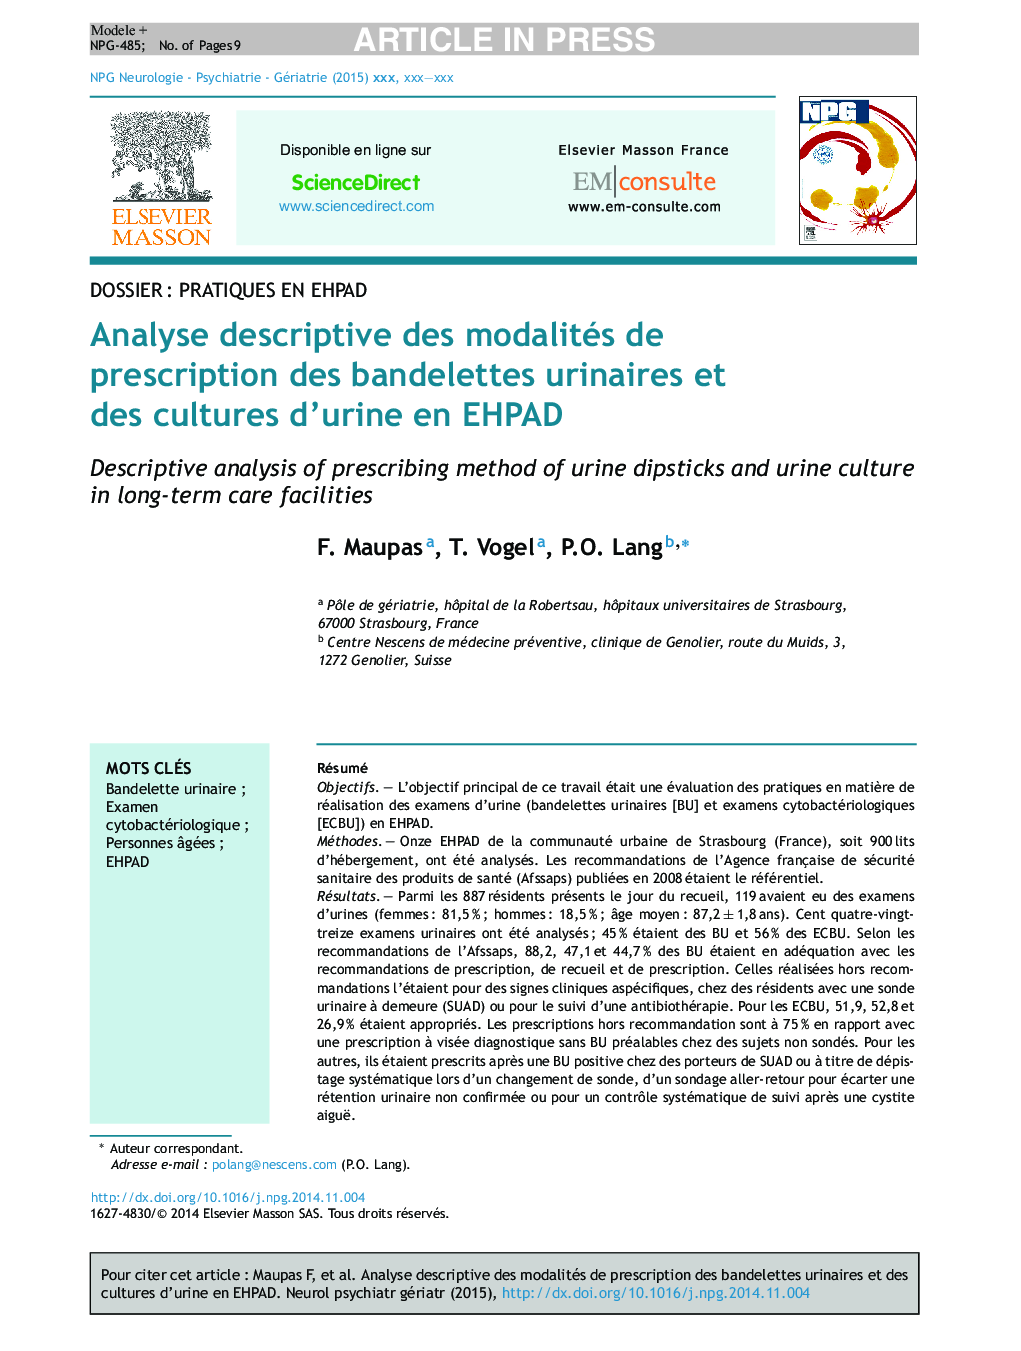 Analyse descriptive des modalités de prescription des bandelettes urinaires et des cultures d'urine en EHPAD